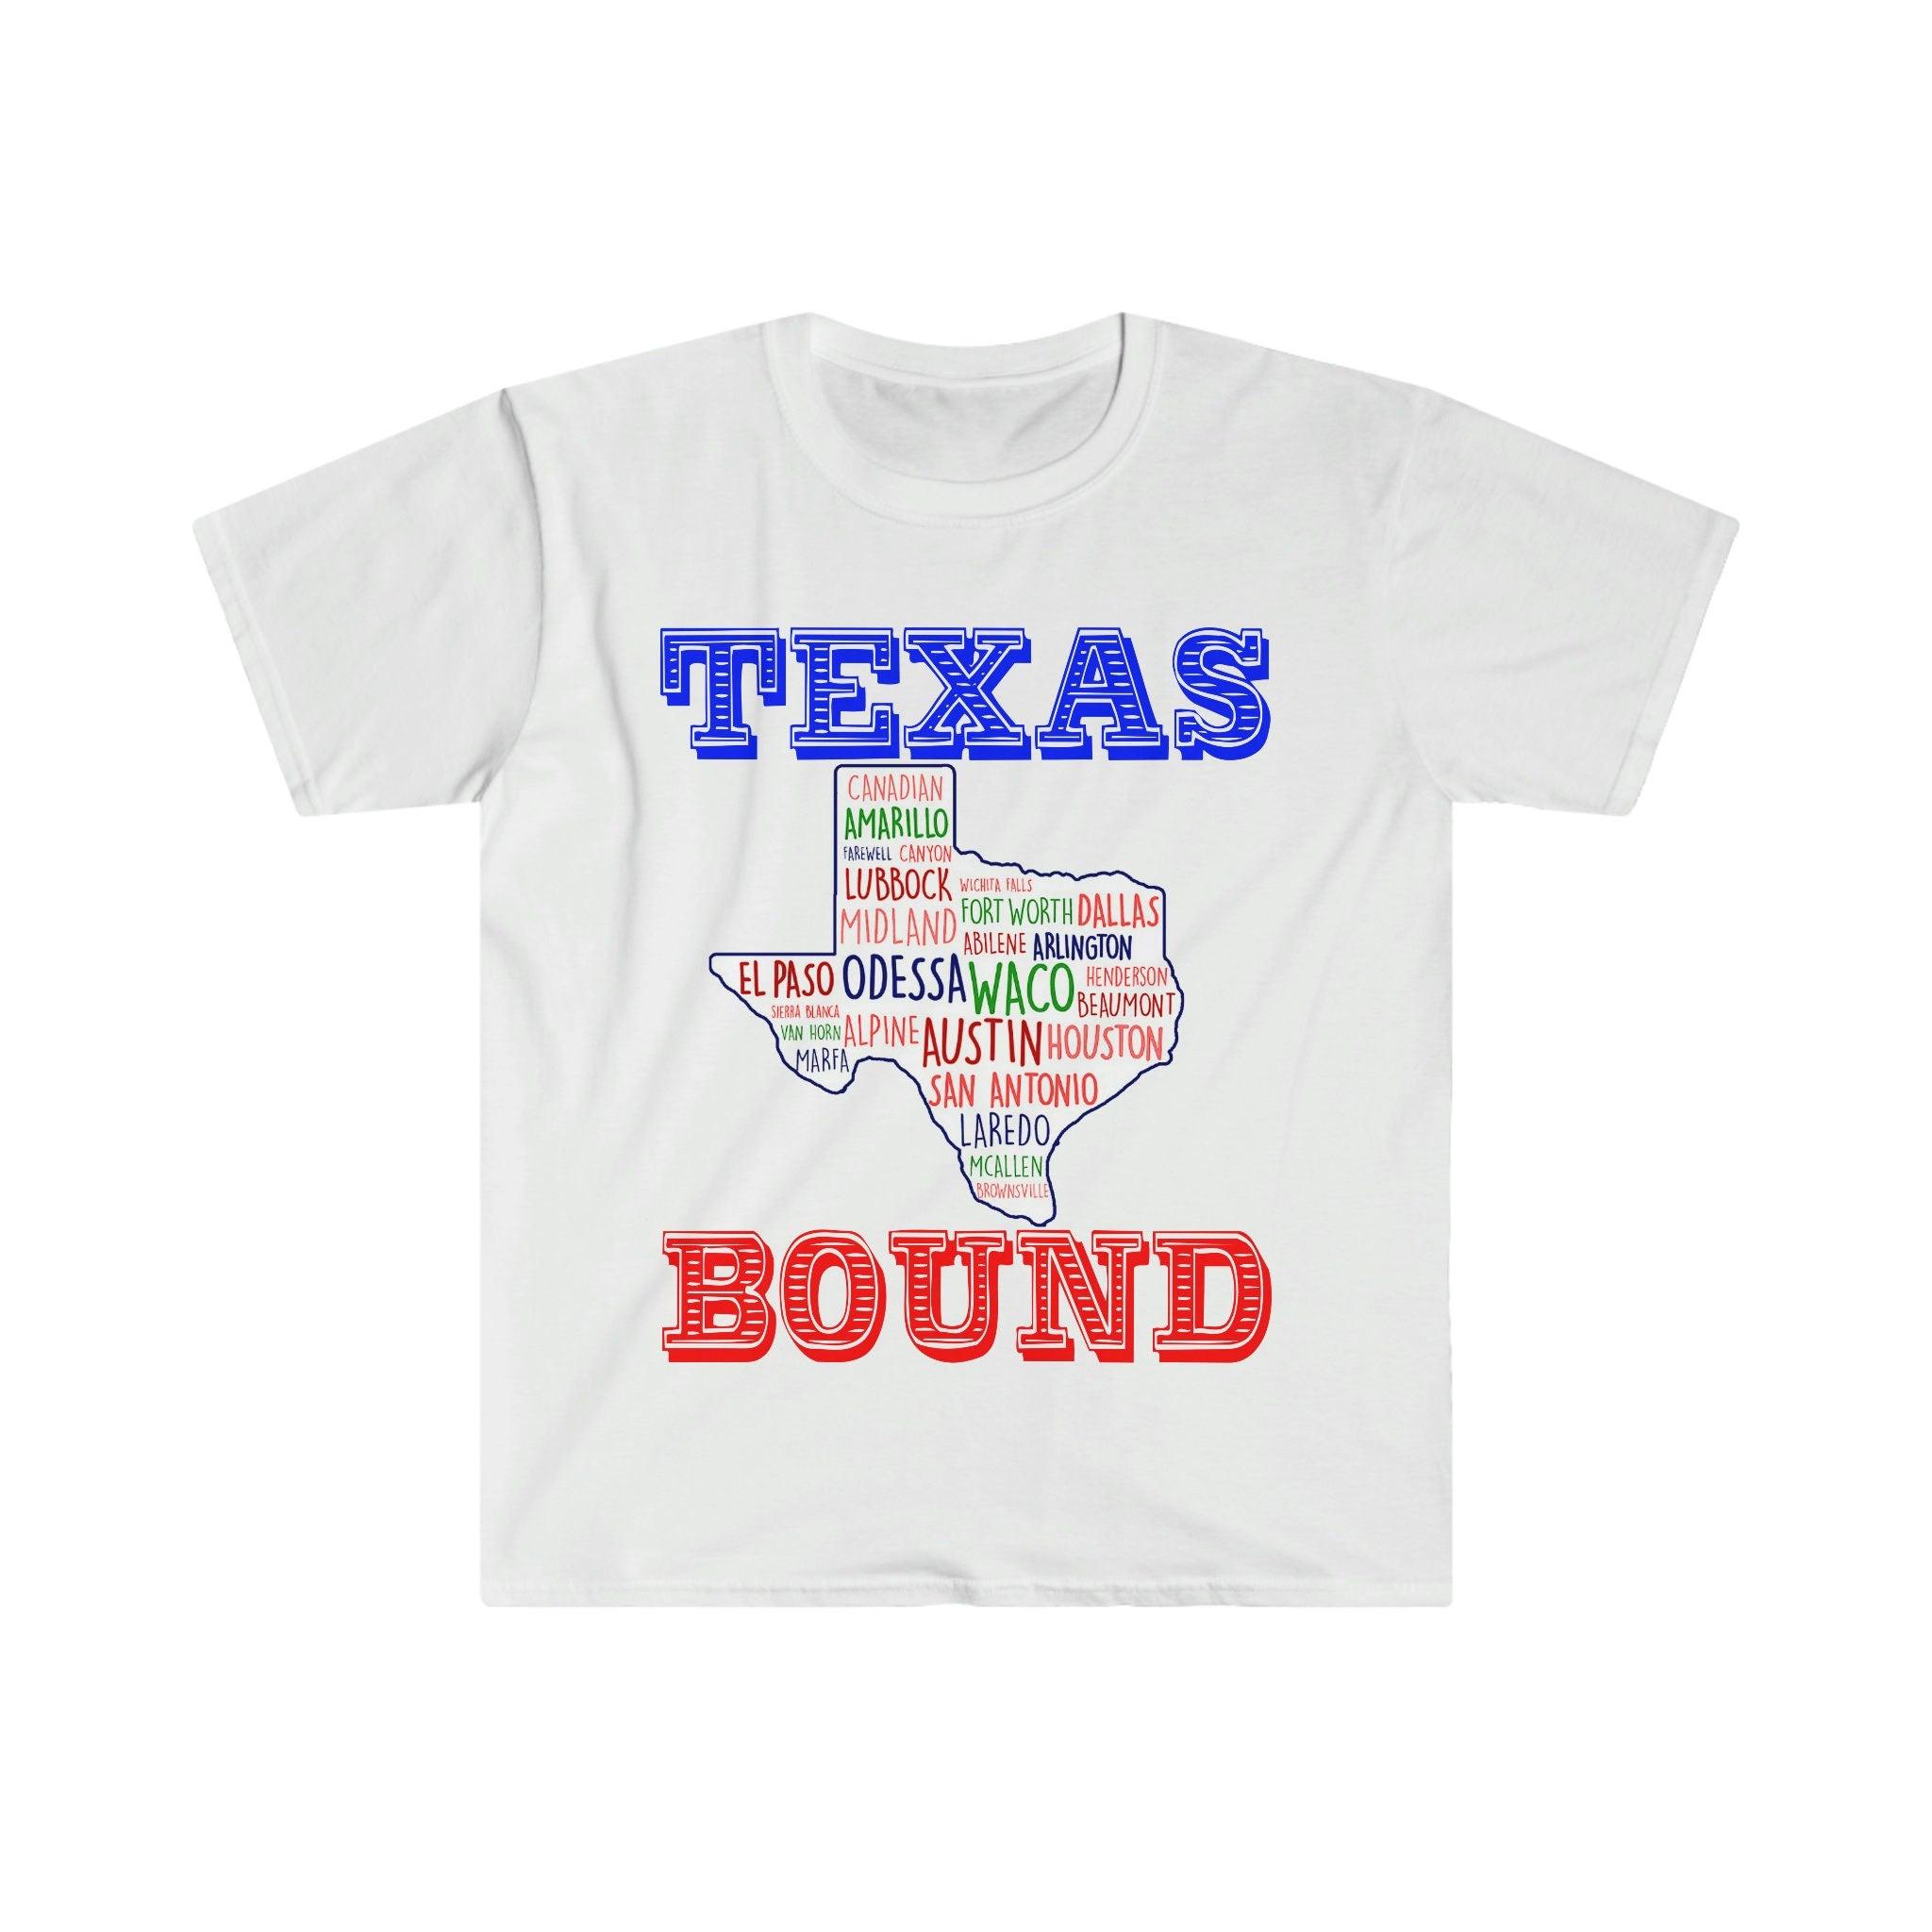 Texas Bound | Texas Places T-shirts |Texas Map T-shirts, Flytta till Austin , Välkommen till Texas Gift, Texas Bound, Nytt i Texas, Flytta till DFW Slå biden skattehöjning, Biden skatteplan, kustliberal, Houston, flytta till austin, Flytta till DFW, Flytta till Texas, Flytta till Texas Mugg, Ny i Texas, Republikan, Tee, tees, Texas bound, Texas Girl, Texas Republican in - plusminusco.com